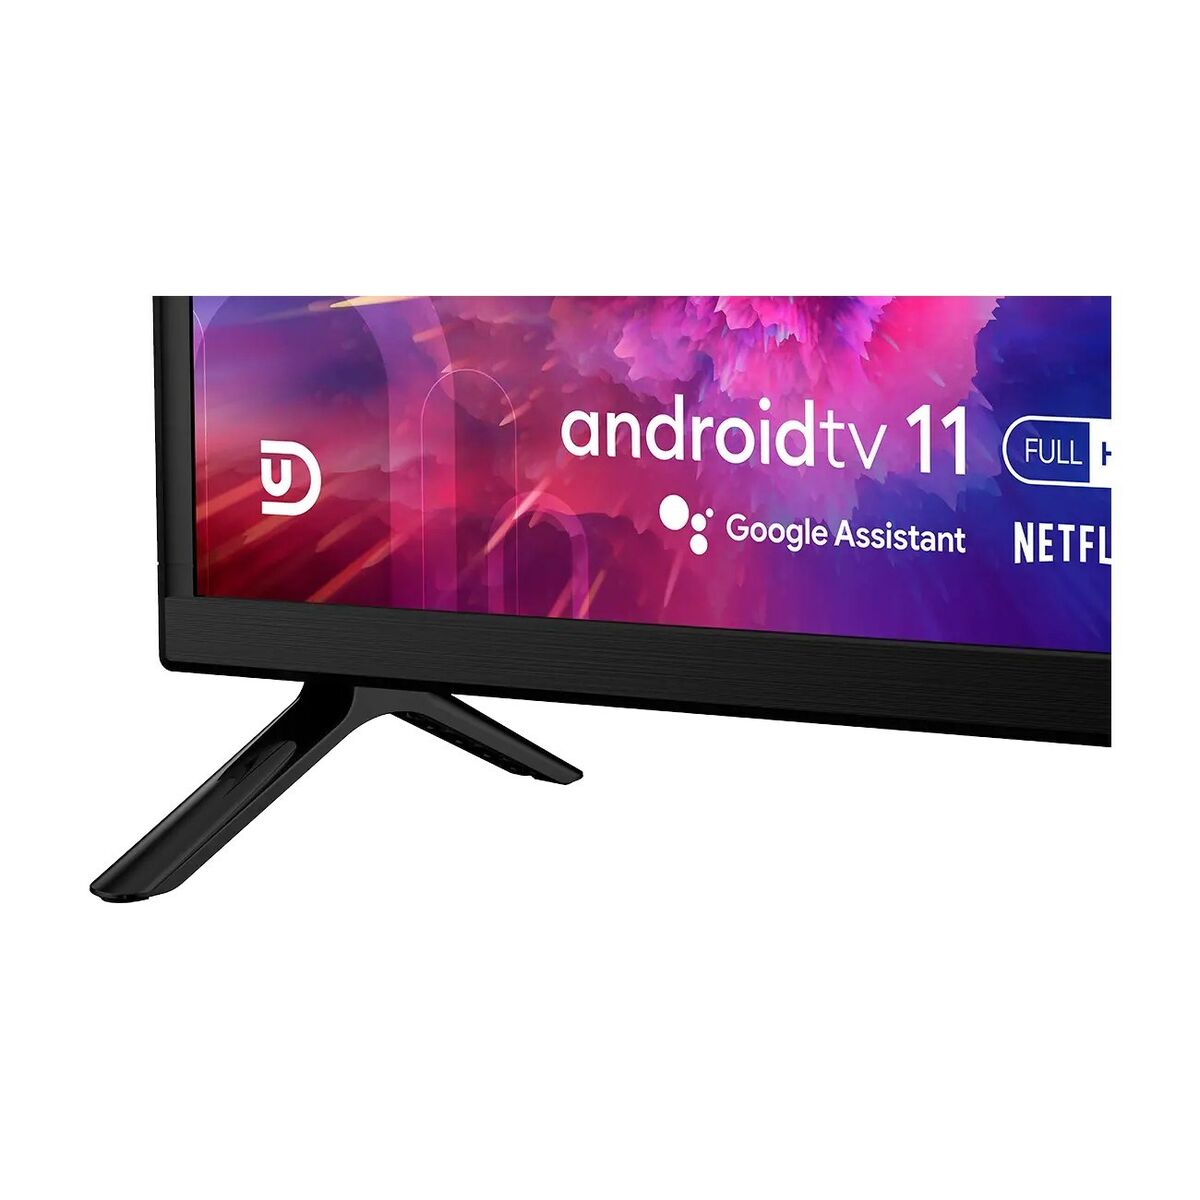 Smart TV UD 40F5210 40" Full HD D-LED